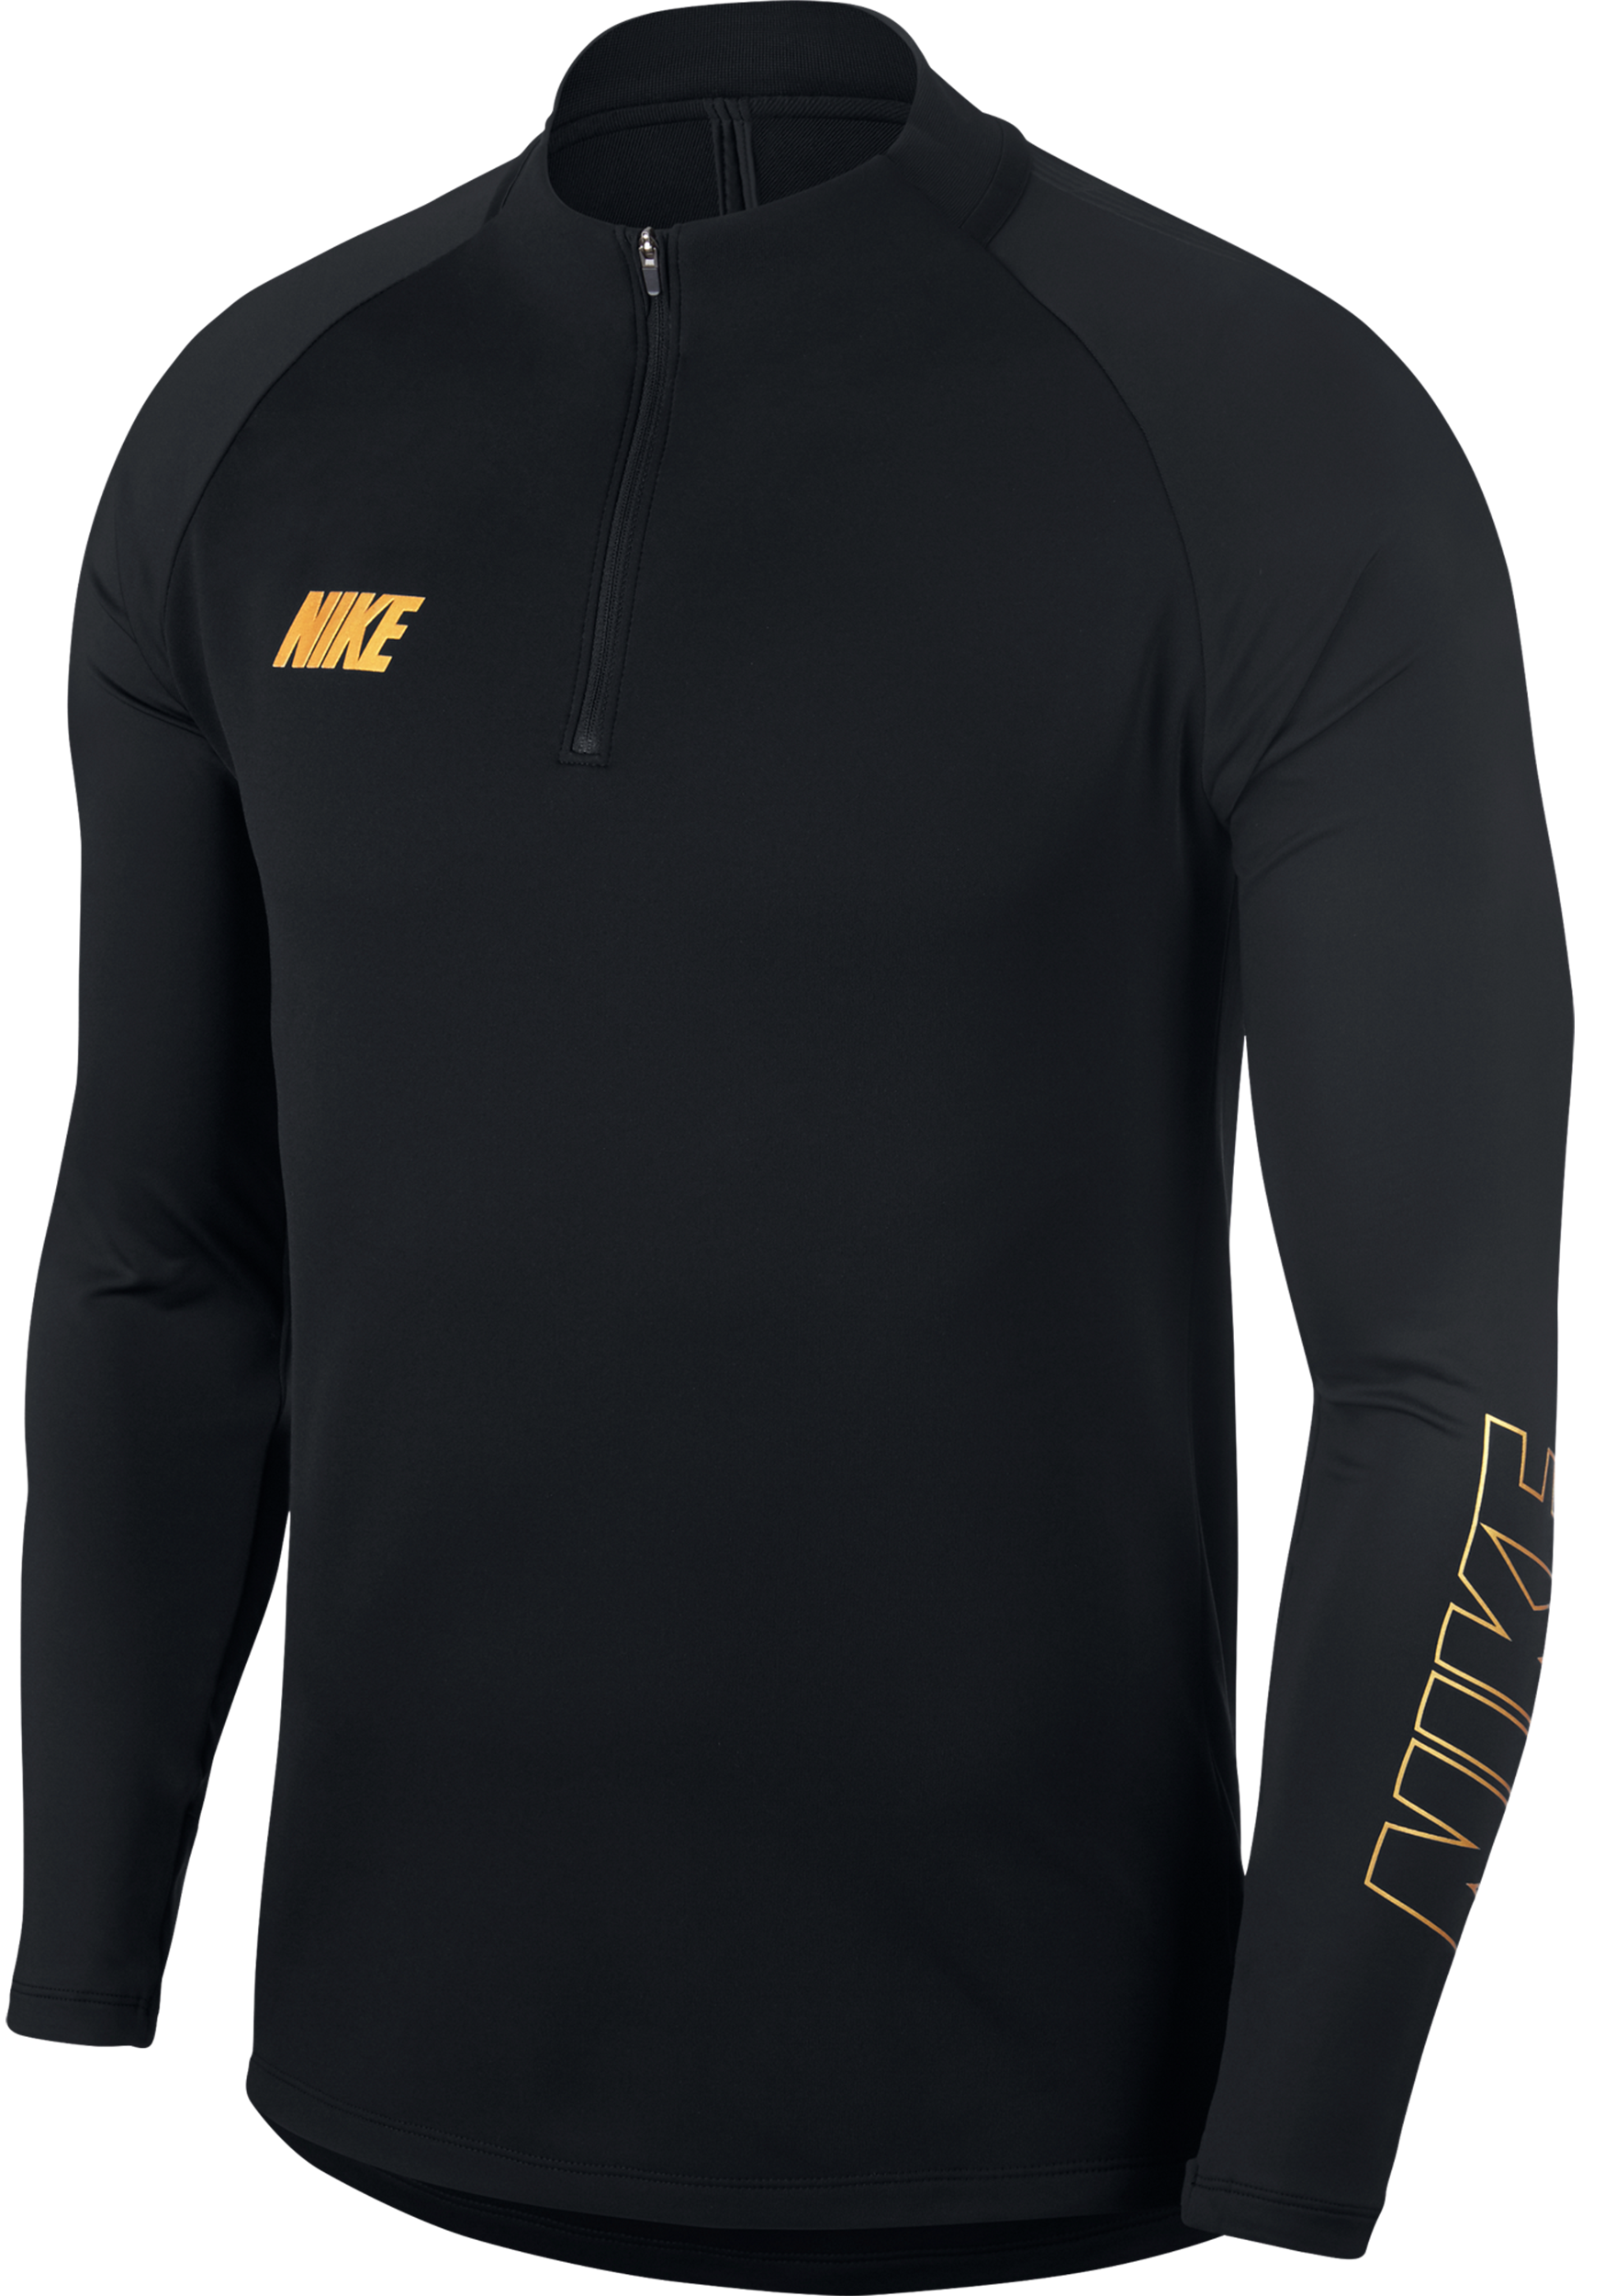 Nike Squad 19 Drill Top Sweatshirt